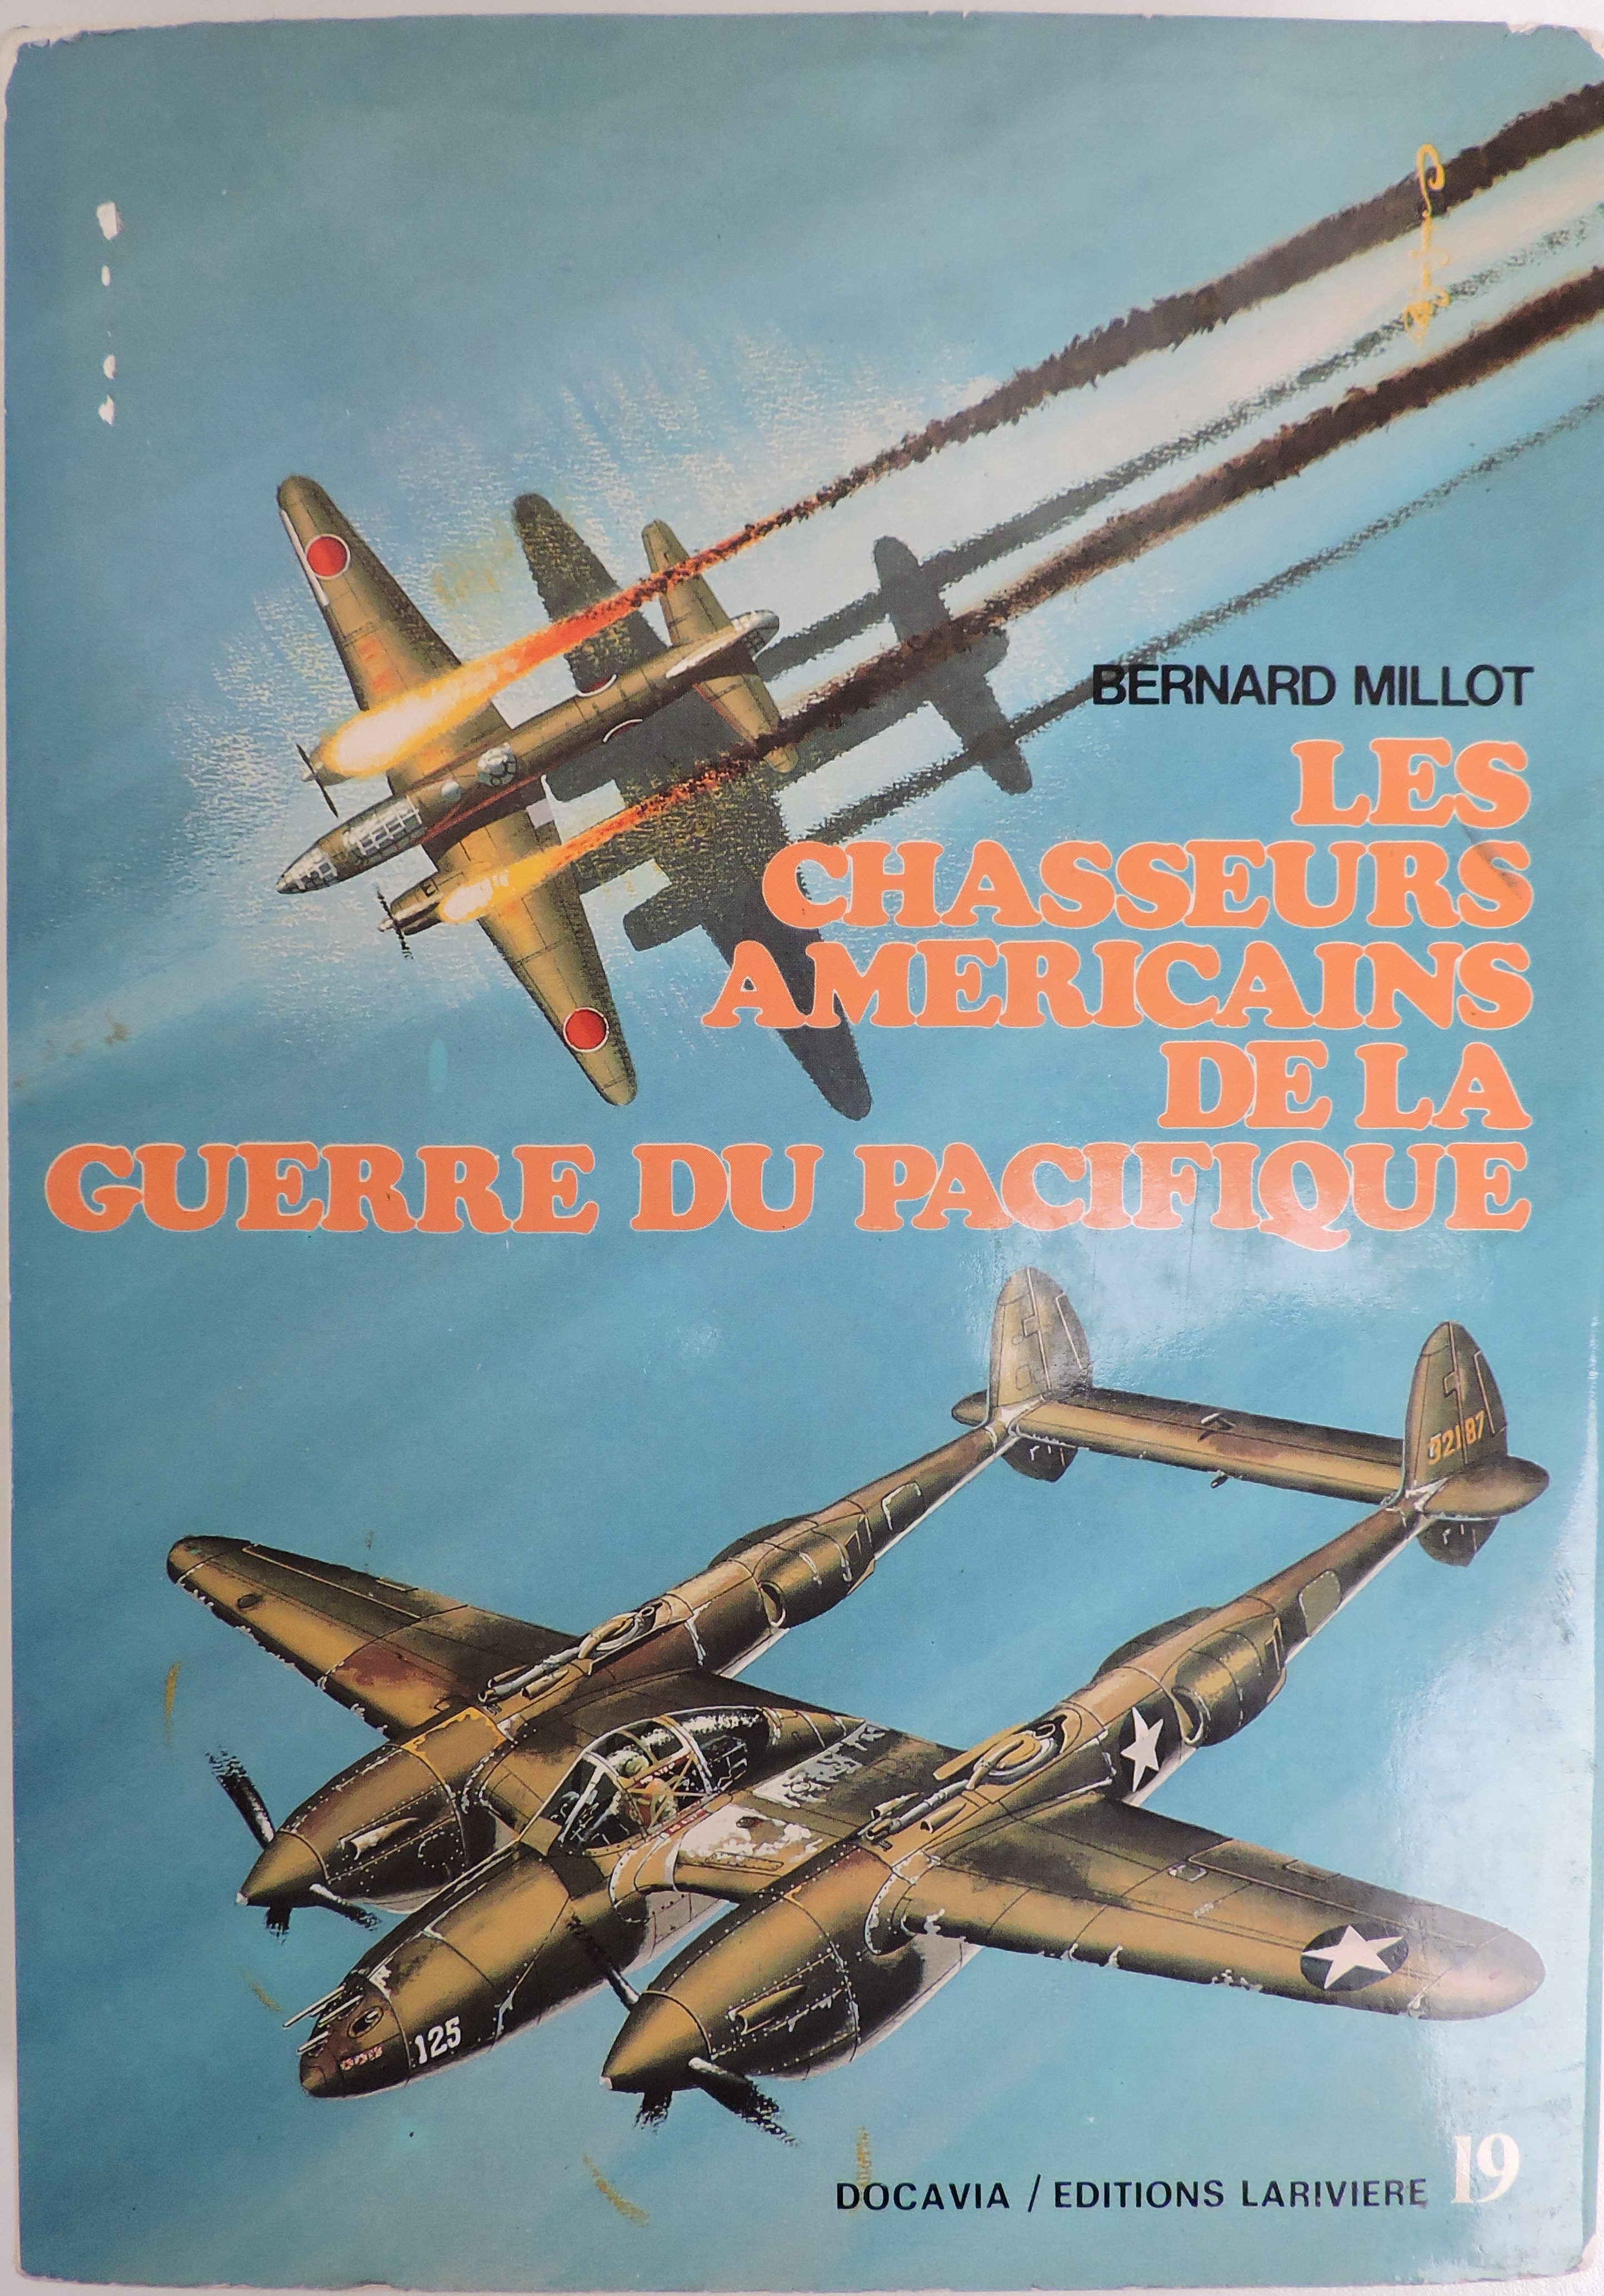 Les chasseurs américains de la guerre du Pacifique tome 2 Bernard Millot  Docavia N°19